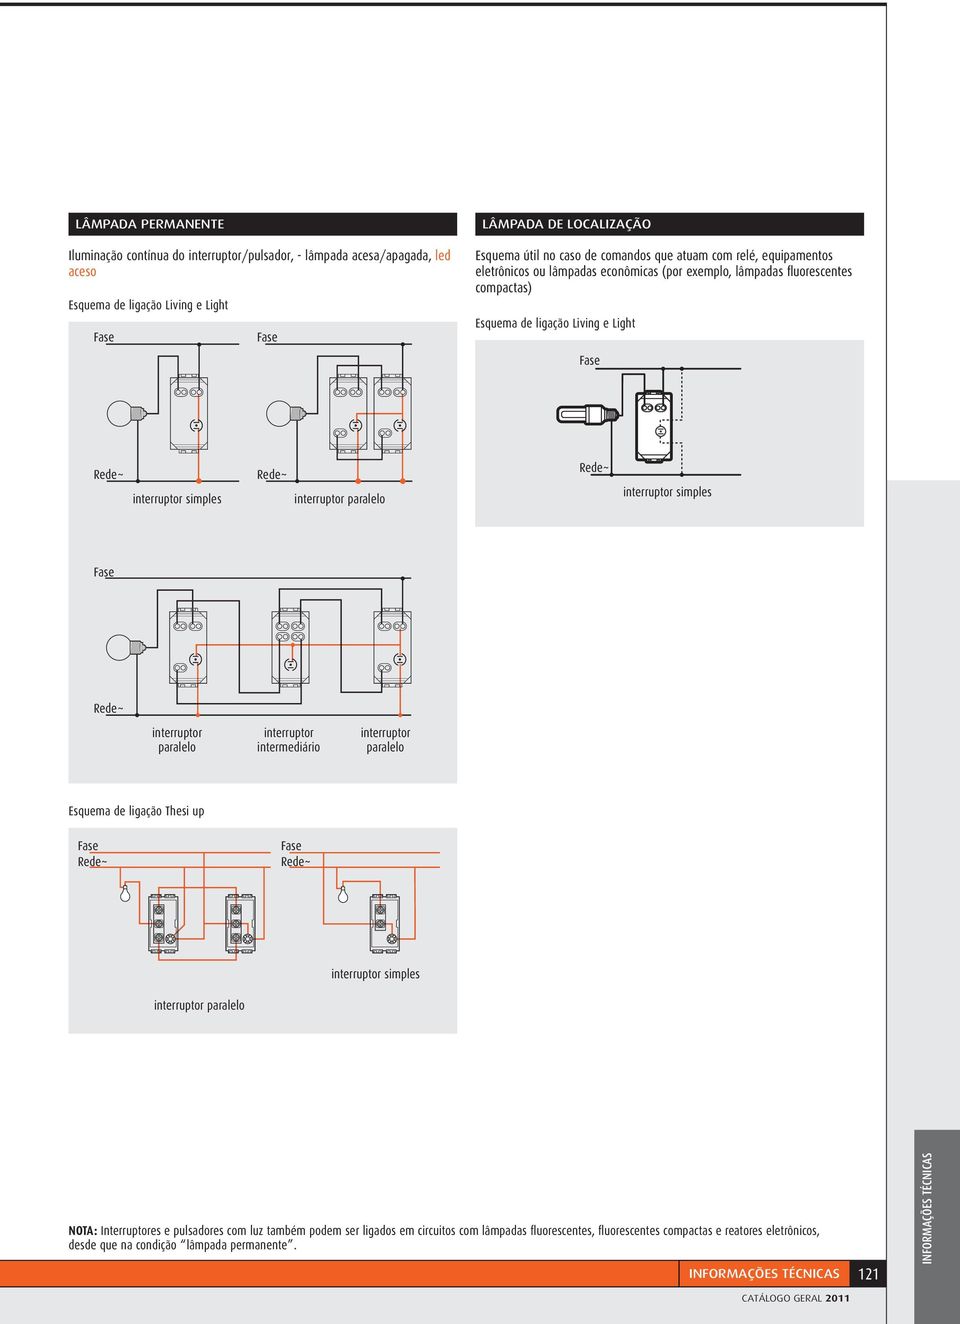 simples paralelo simples paralelo intermediário paralelo Thesi up paralelo simples NOTA: Interruptores e pulsadores com luz também podem ser ligados